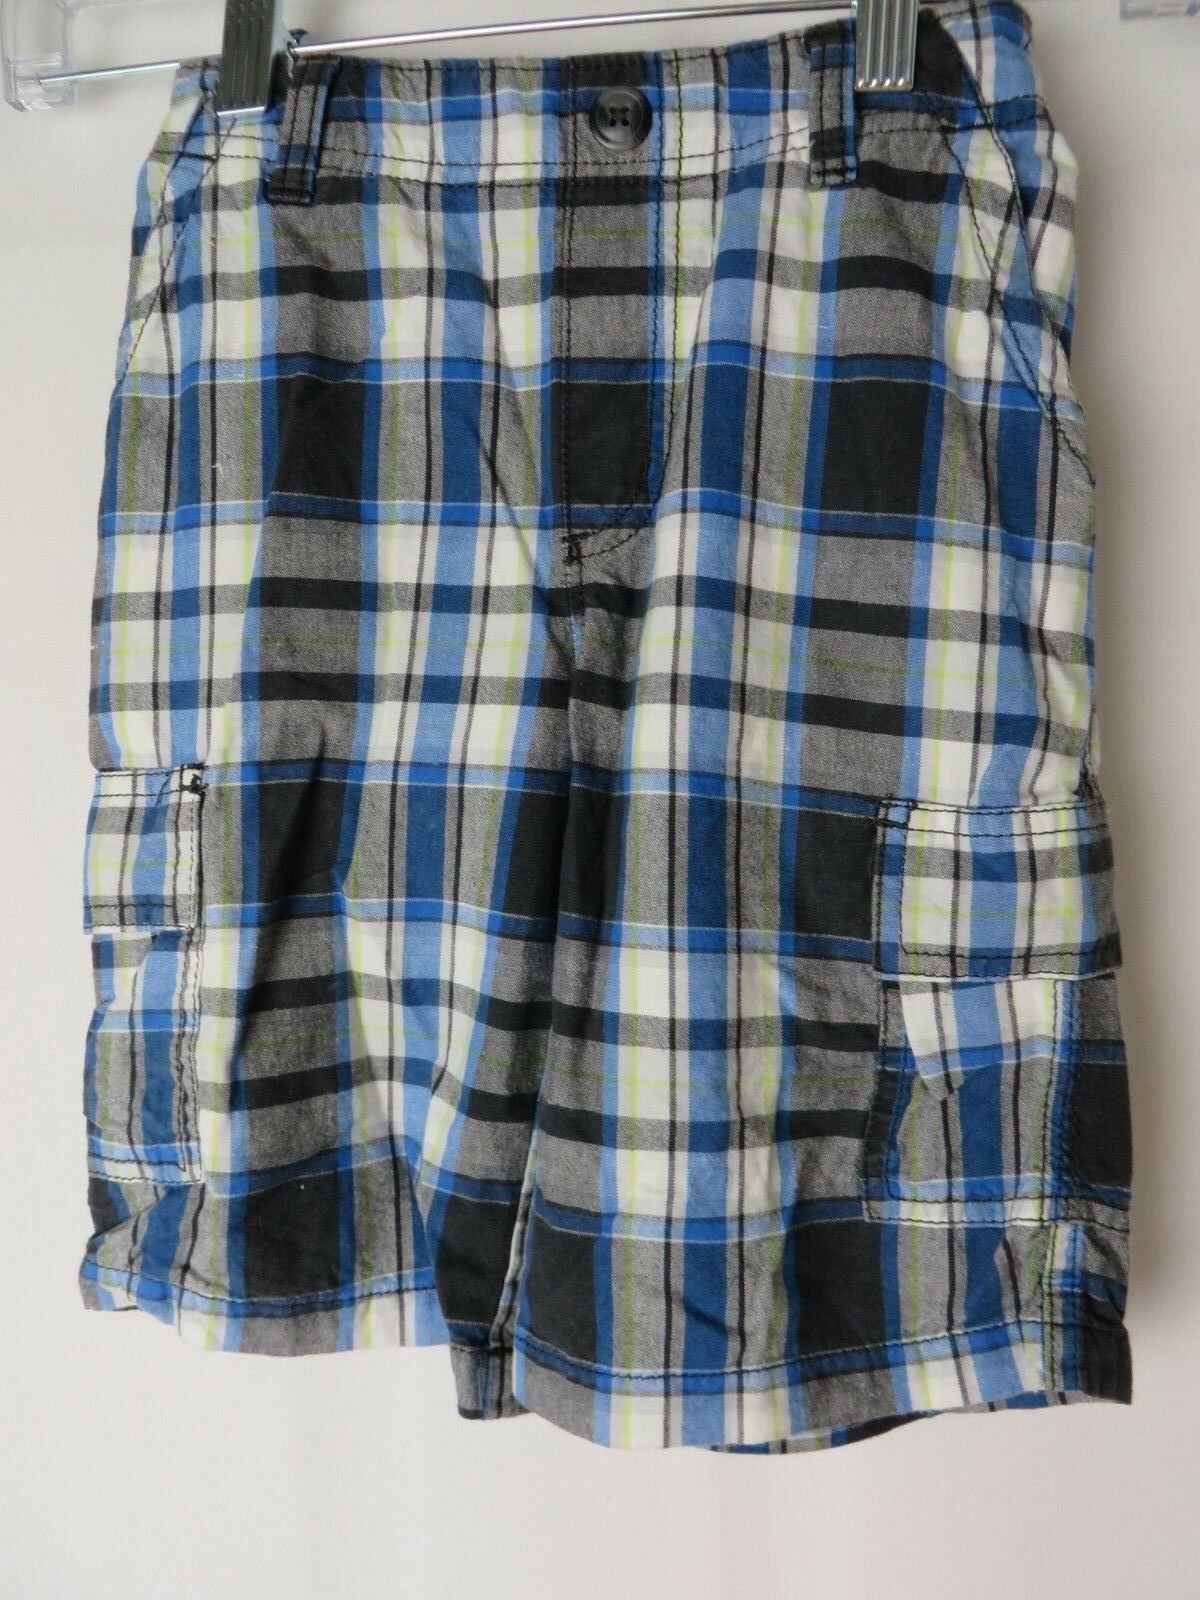 Sonoma Boys Cargo Shorts Back Elastic Waist Black Blue Plaid Size 7 #7983